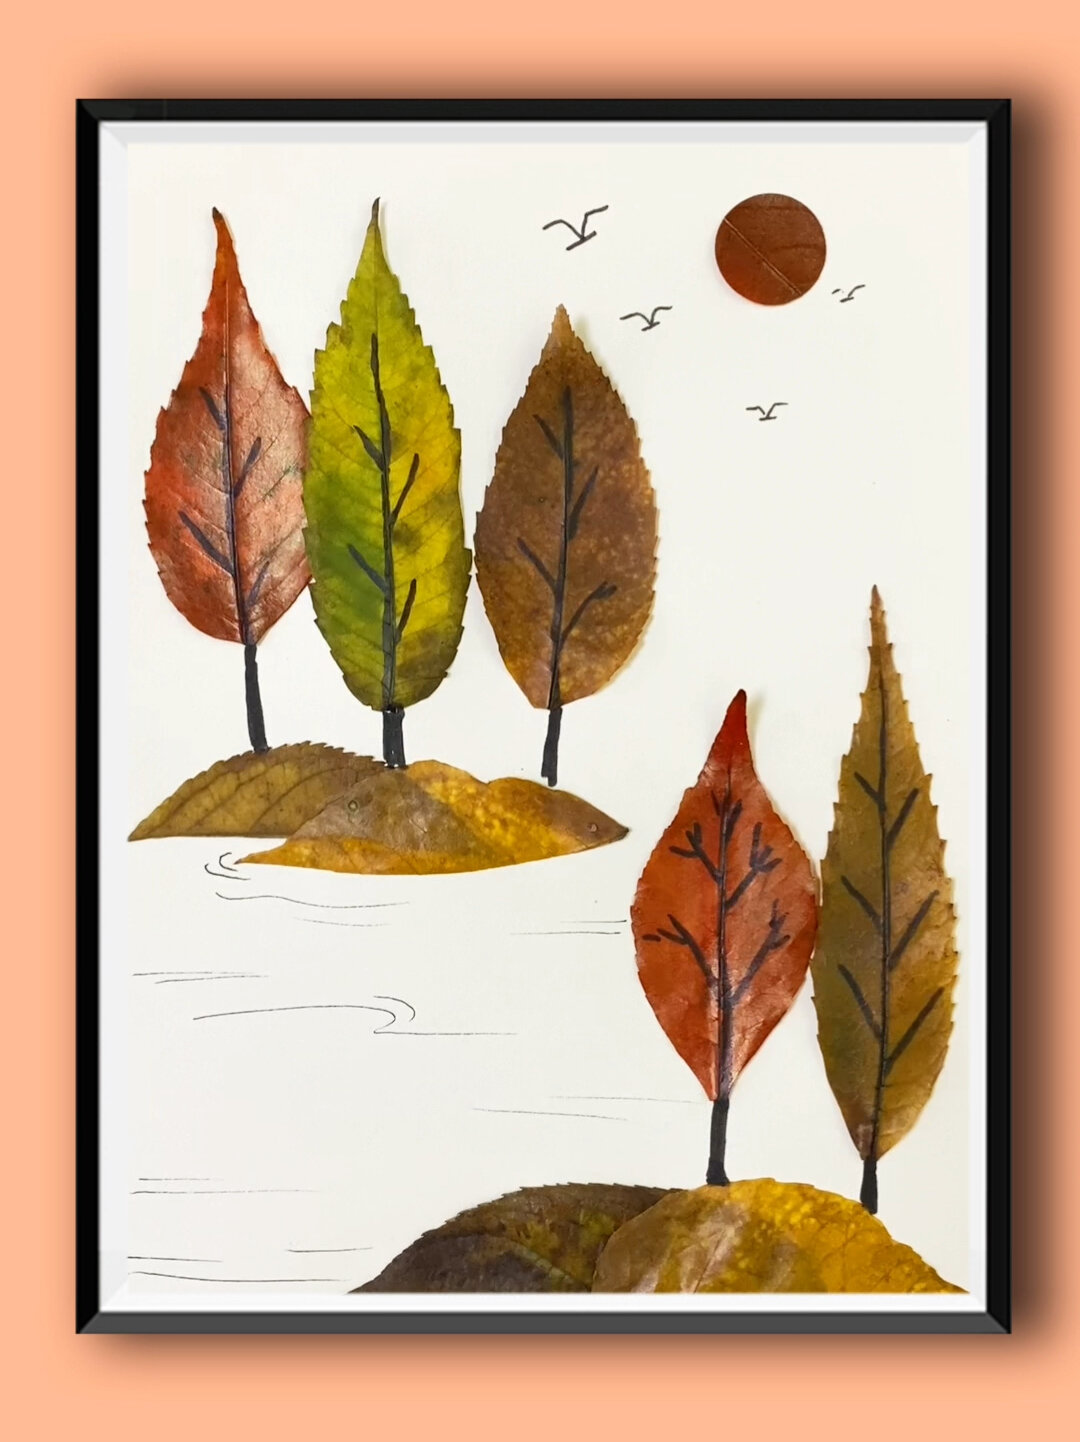 用秋天的落叶做一幅秋天的风景画吧